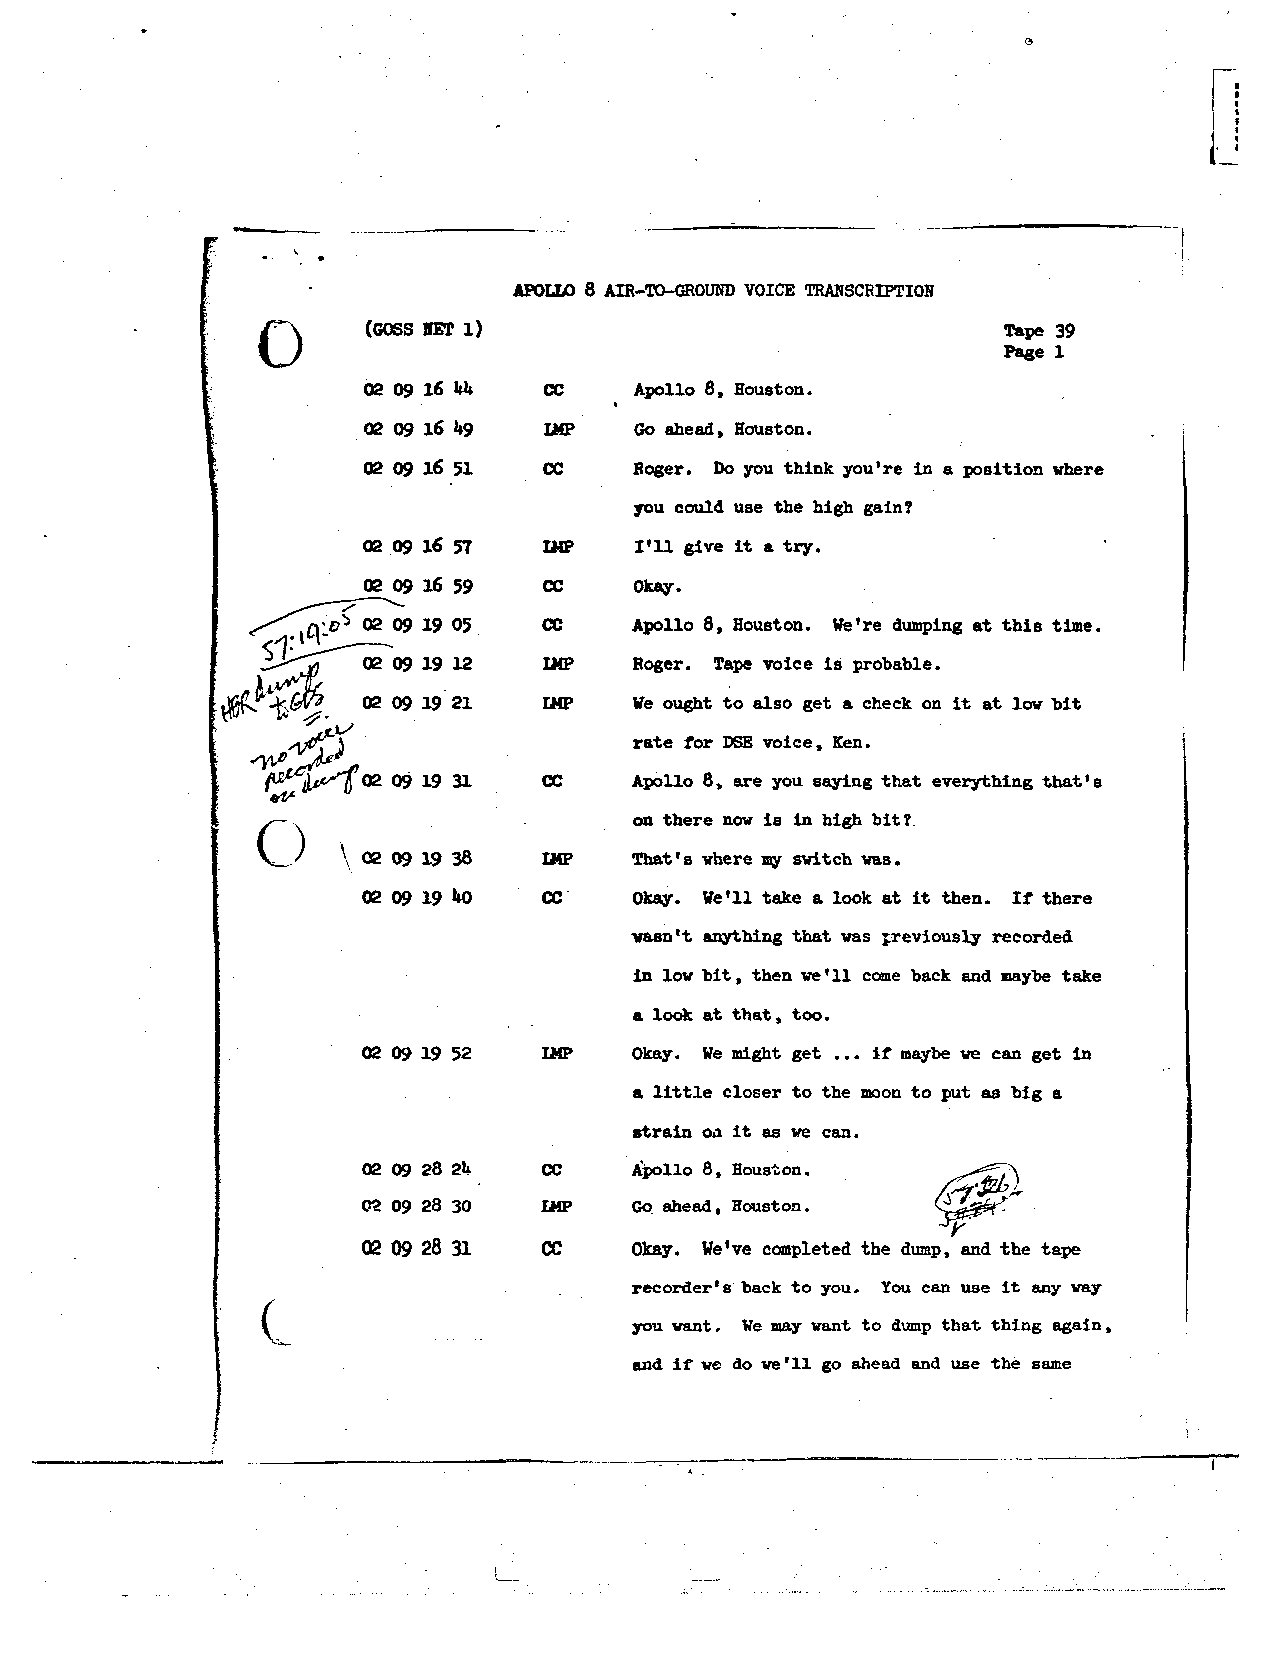 Page 303 of Apollo 8’s original transcript